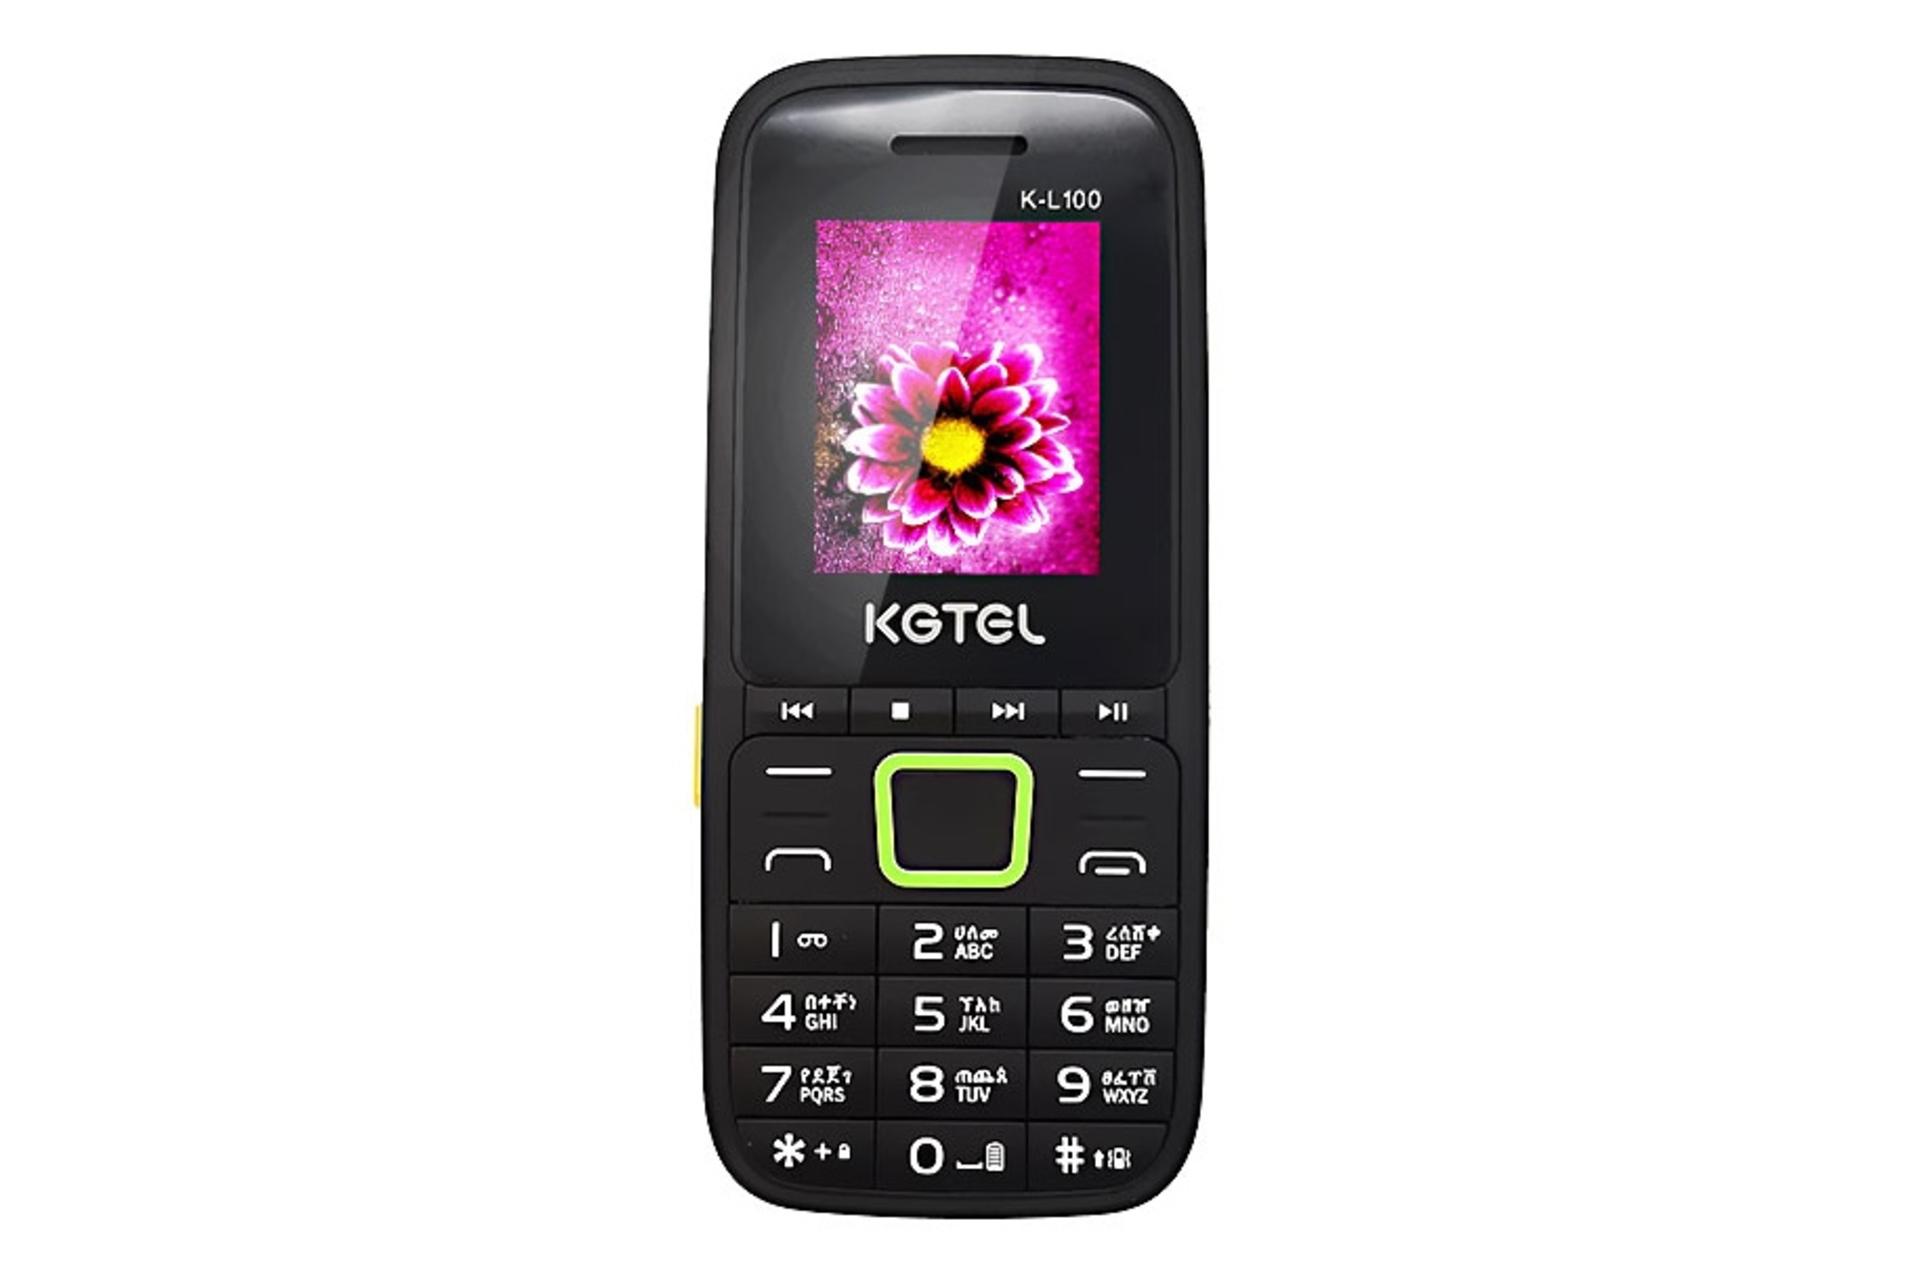 گوشی موبایل کاجیتل KGTEL K-L100